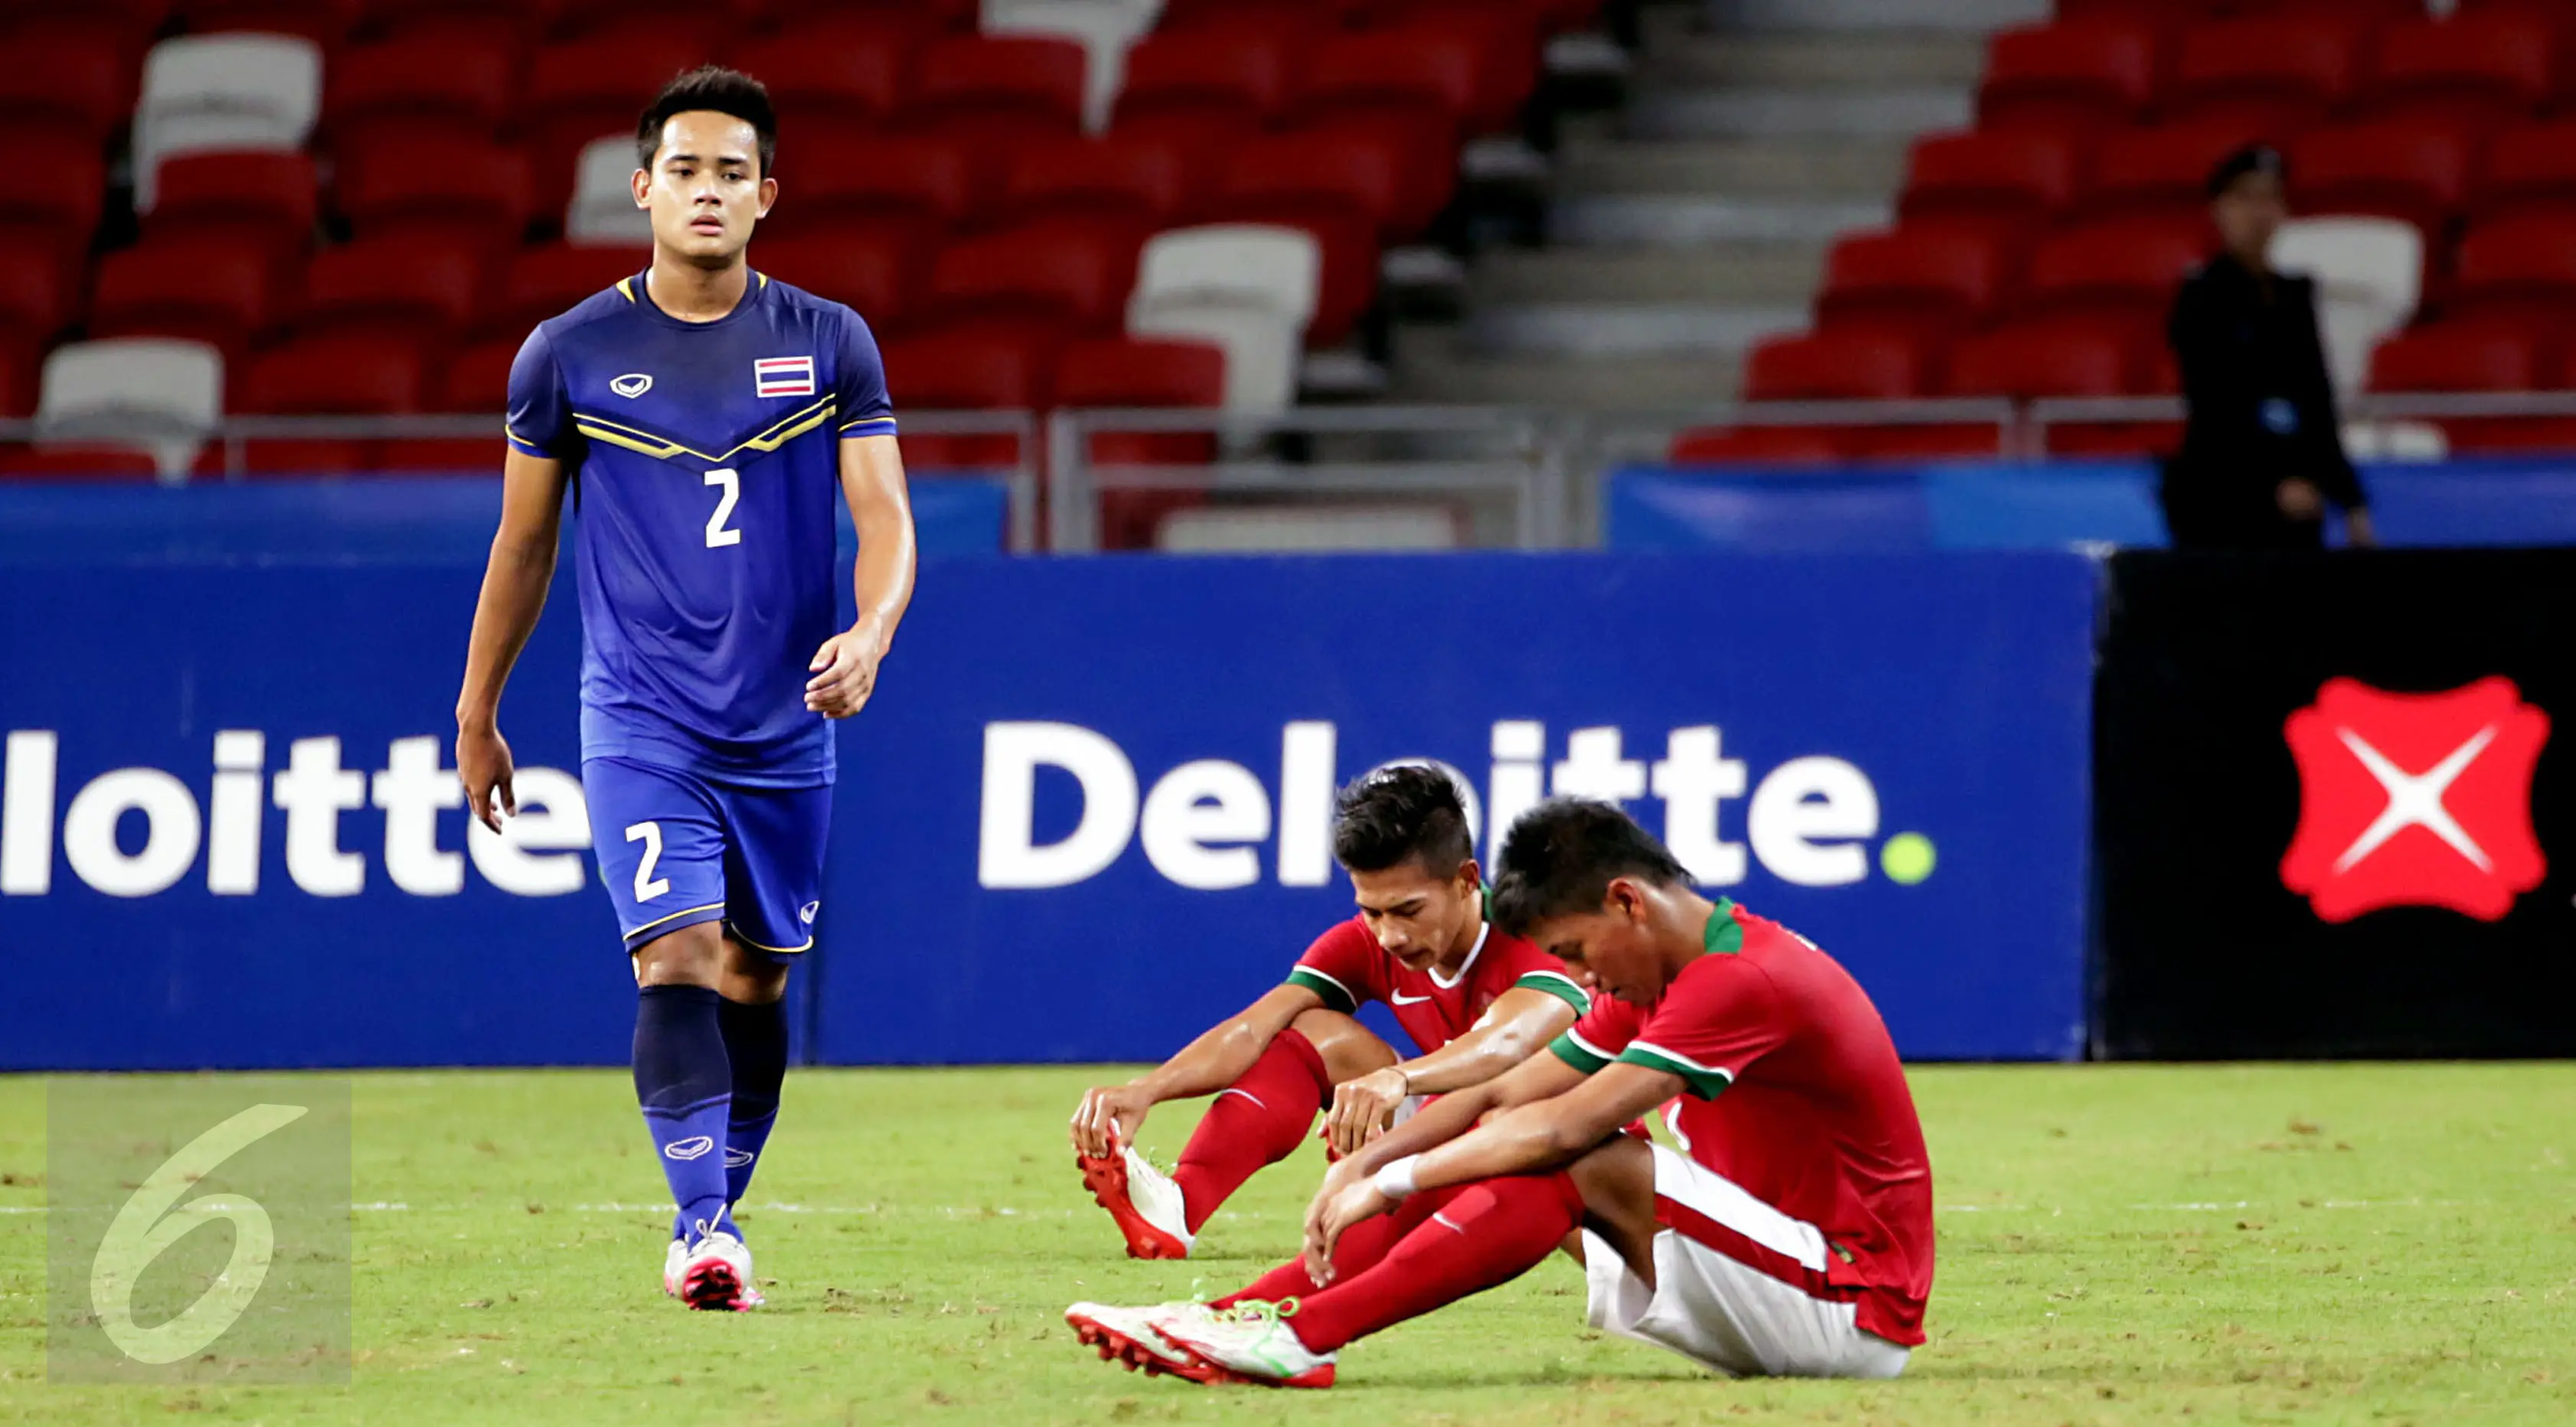 Pemain timnas Indonesia U-23, Ahmad Nufiandani dan Syaiful Indra Cahya terduduk usai dikalahkan Thailand dalam semifinal sepak bola SEA Games ke-28 di National Stadium Singapore, Sabtu (13/6/2015). Indonesia kalah 0-5. (Liputan6.com/Helmi Fithriansyah)